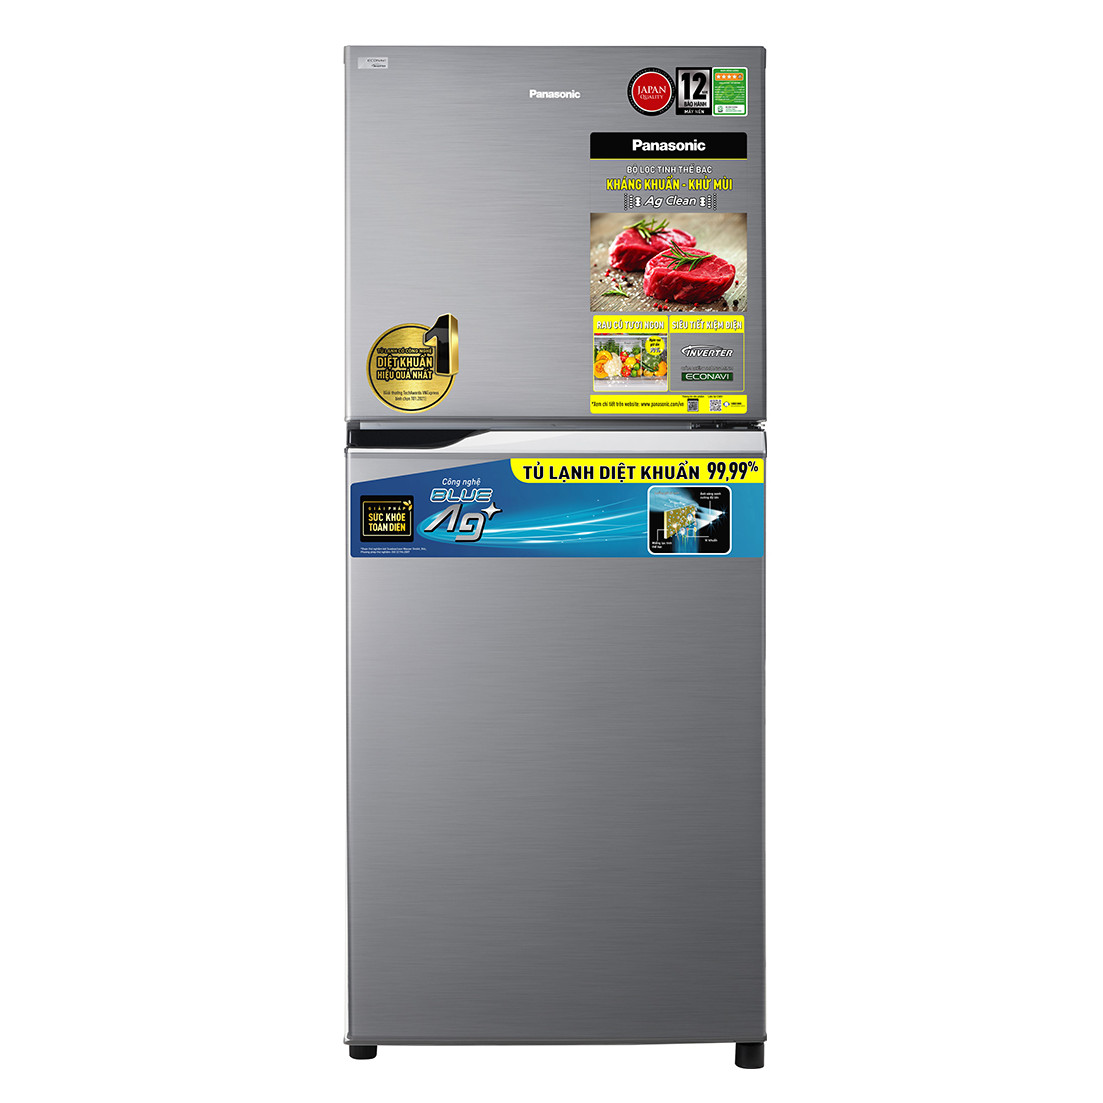 Tủ lạnh Panasonic Inverter 234 lít NR-TV261APSV - Chỉ giao tại HCM